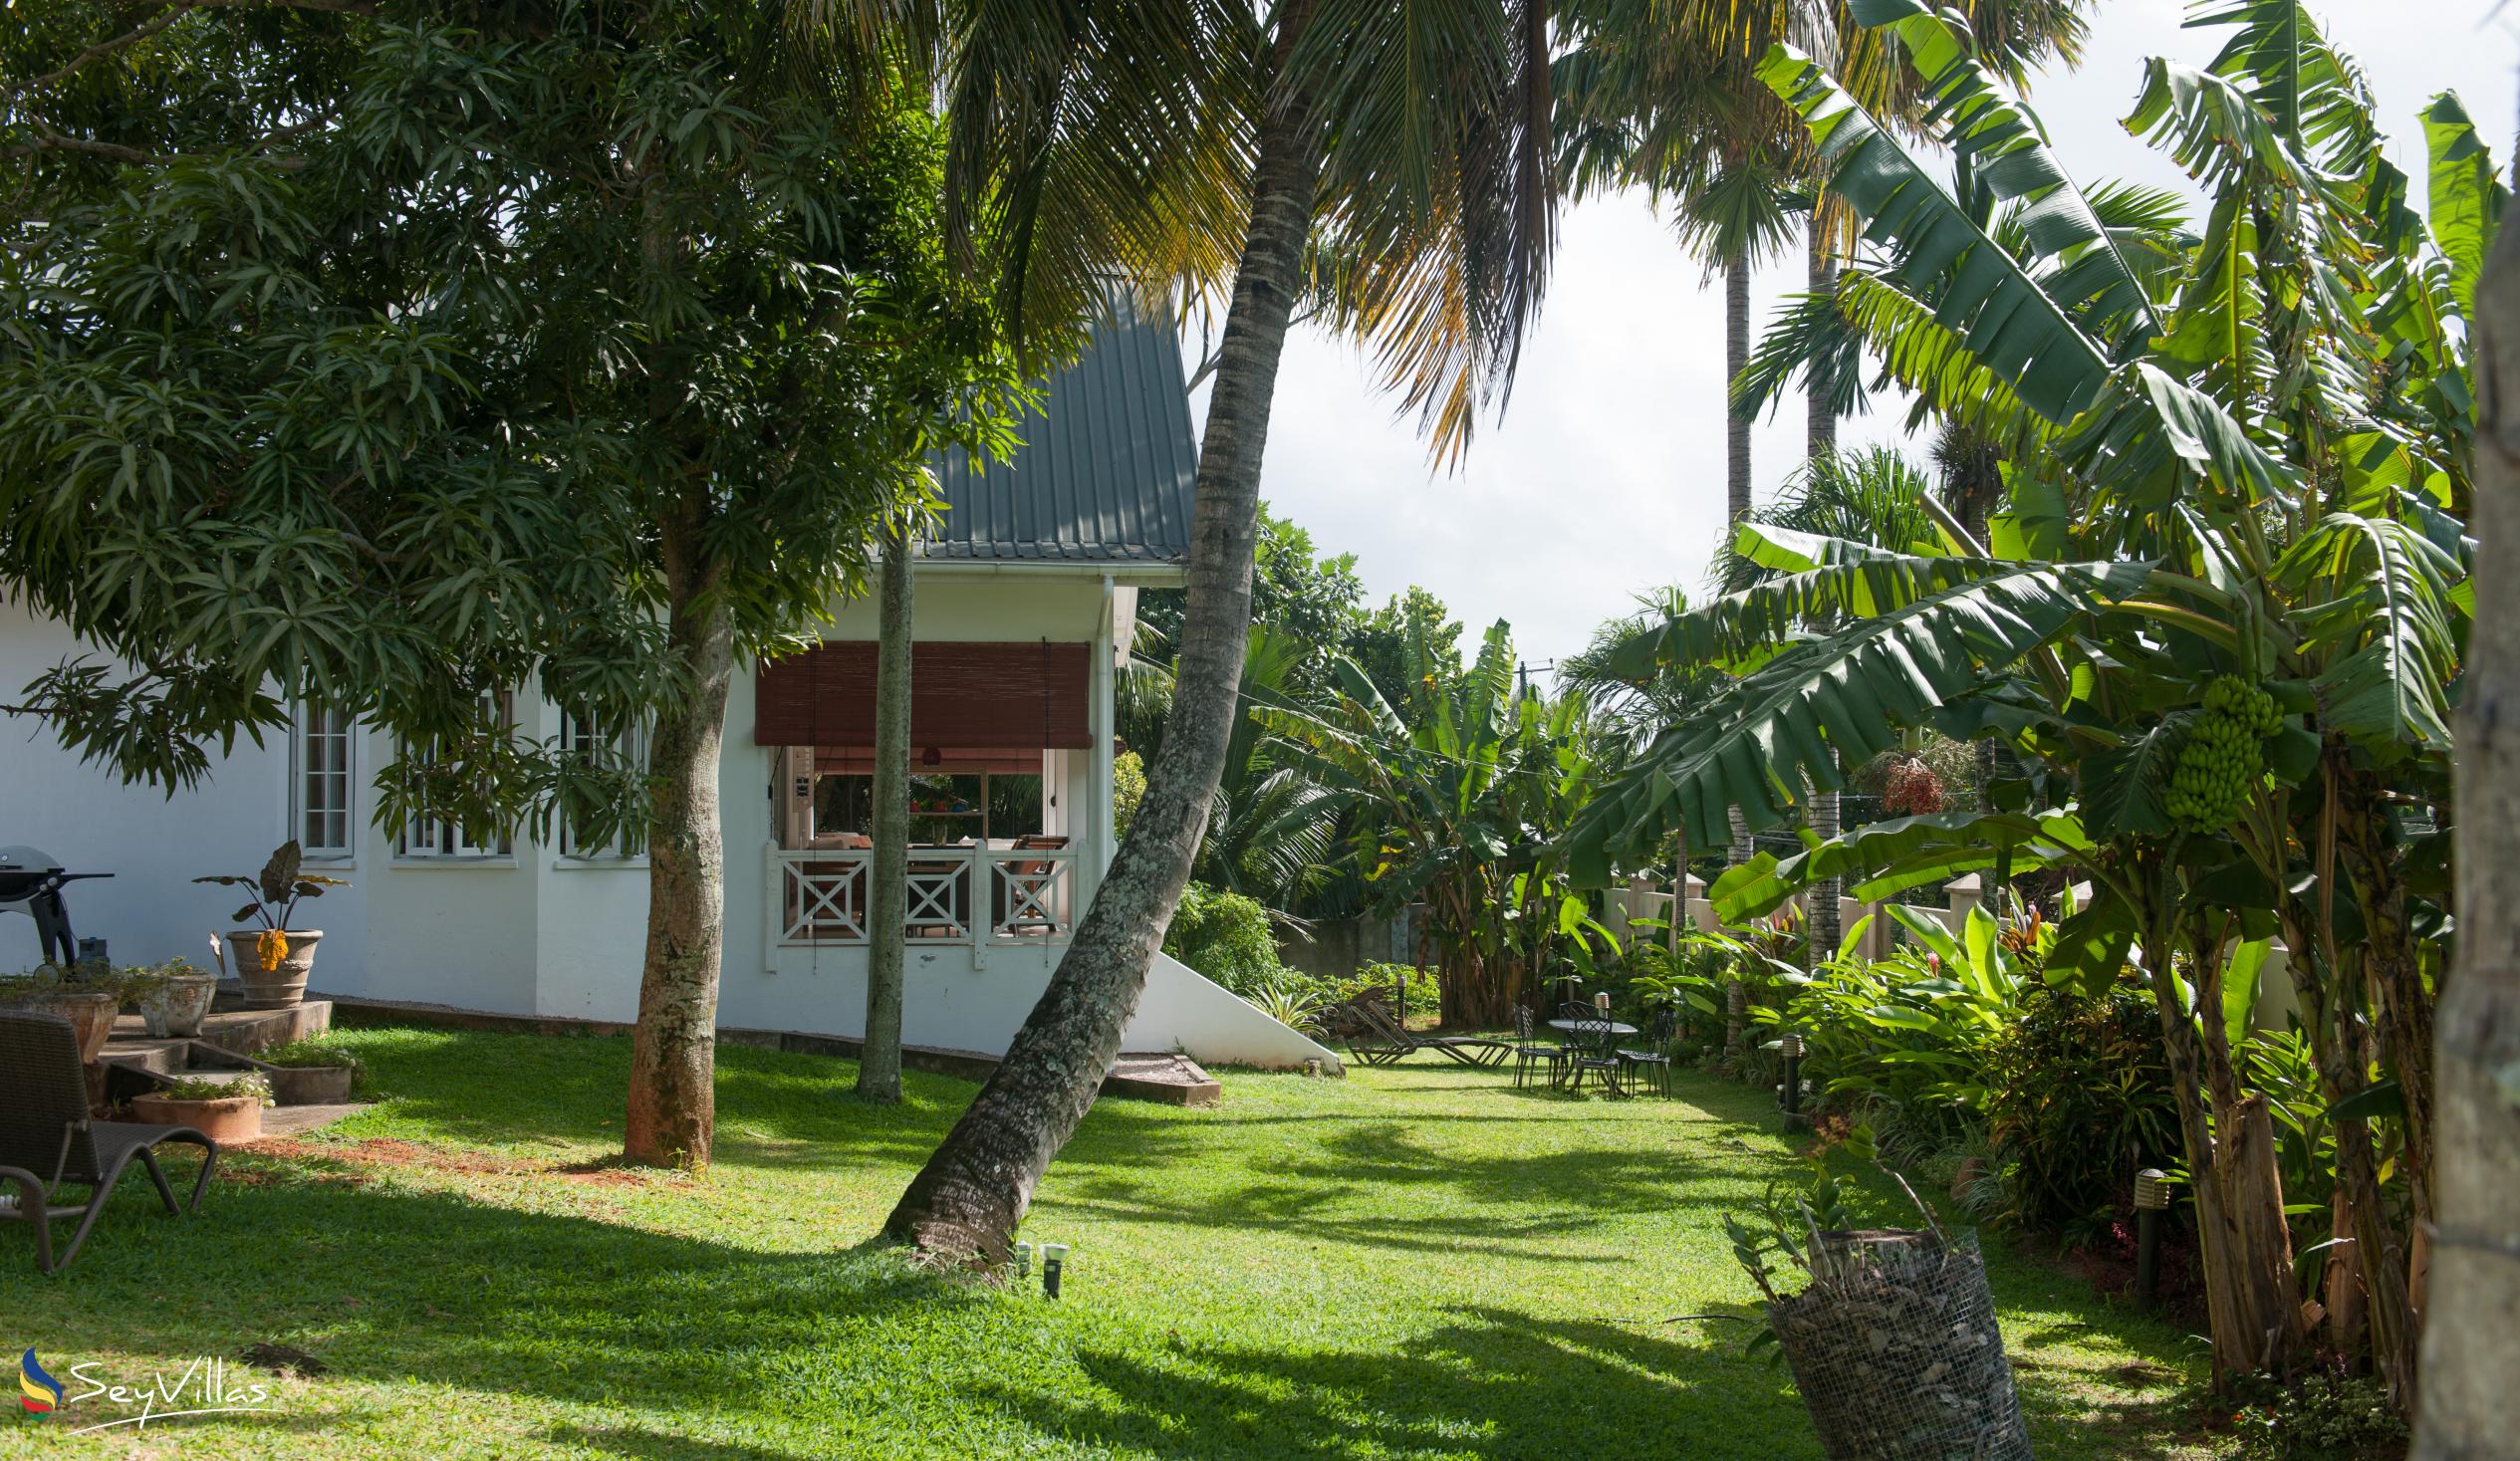 Foto 6: Le Domaine de Bacova - Extérieur - Mahé (Seychelles)